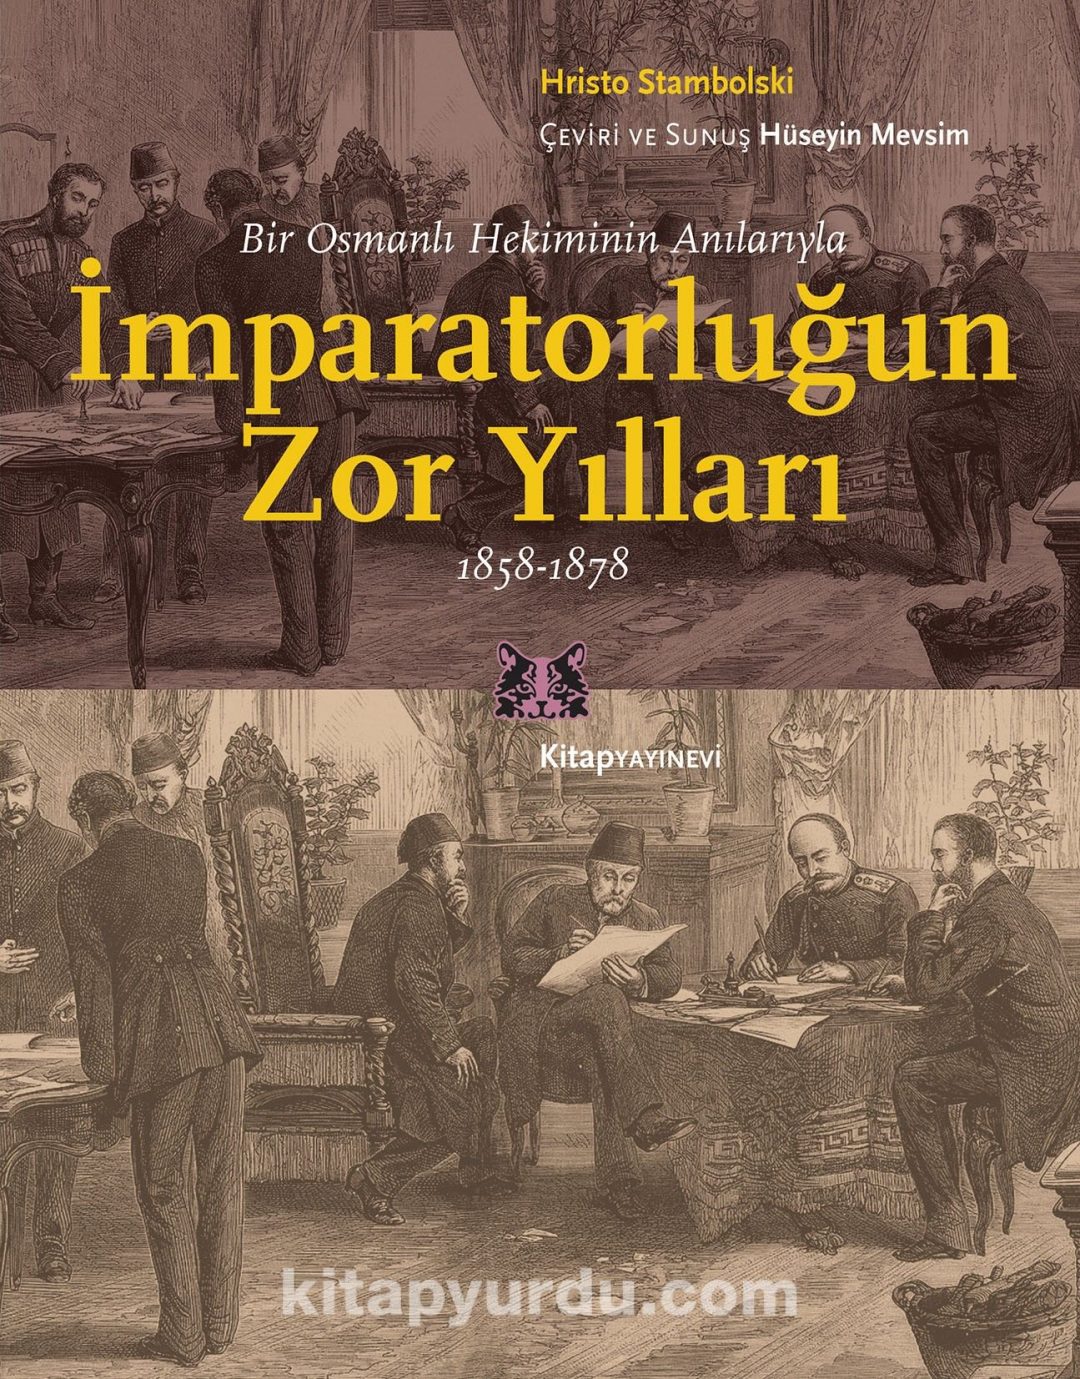 İmparatorluğun Zor Yılları & Bir Osmanlı Hekiminin Anılarıyla, 1858-1878